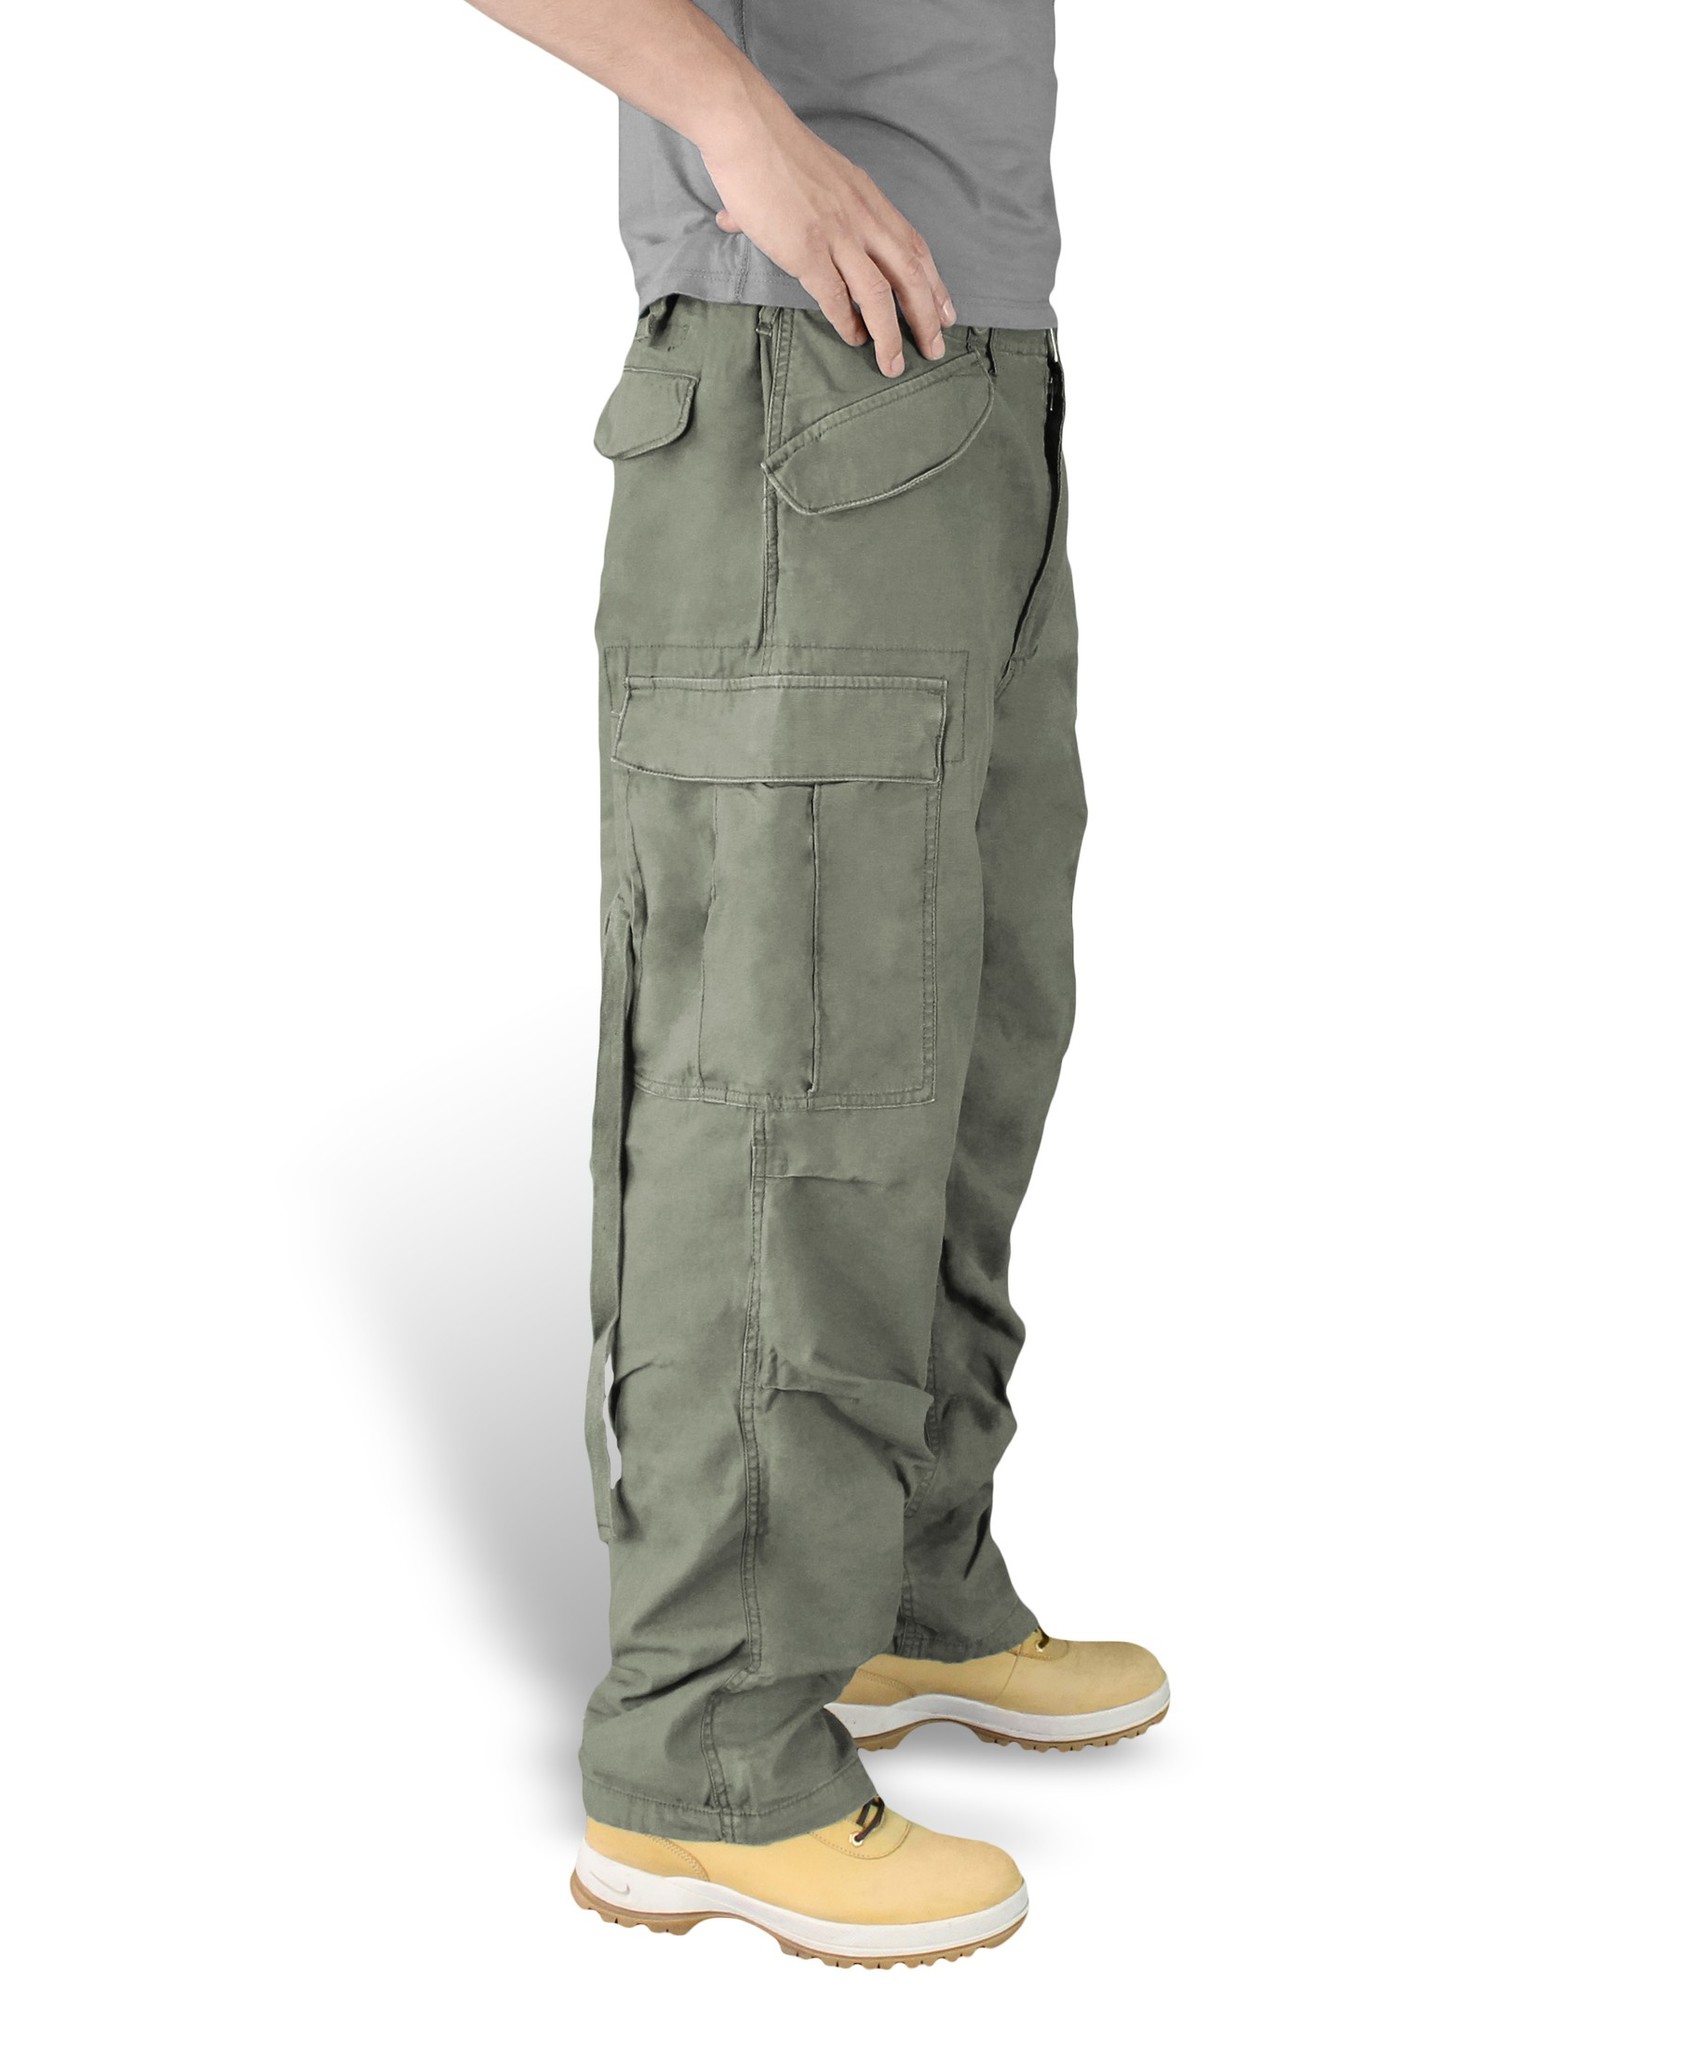 Тактические штаны зимние - ROZETKA - купить тактические штаны для города